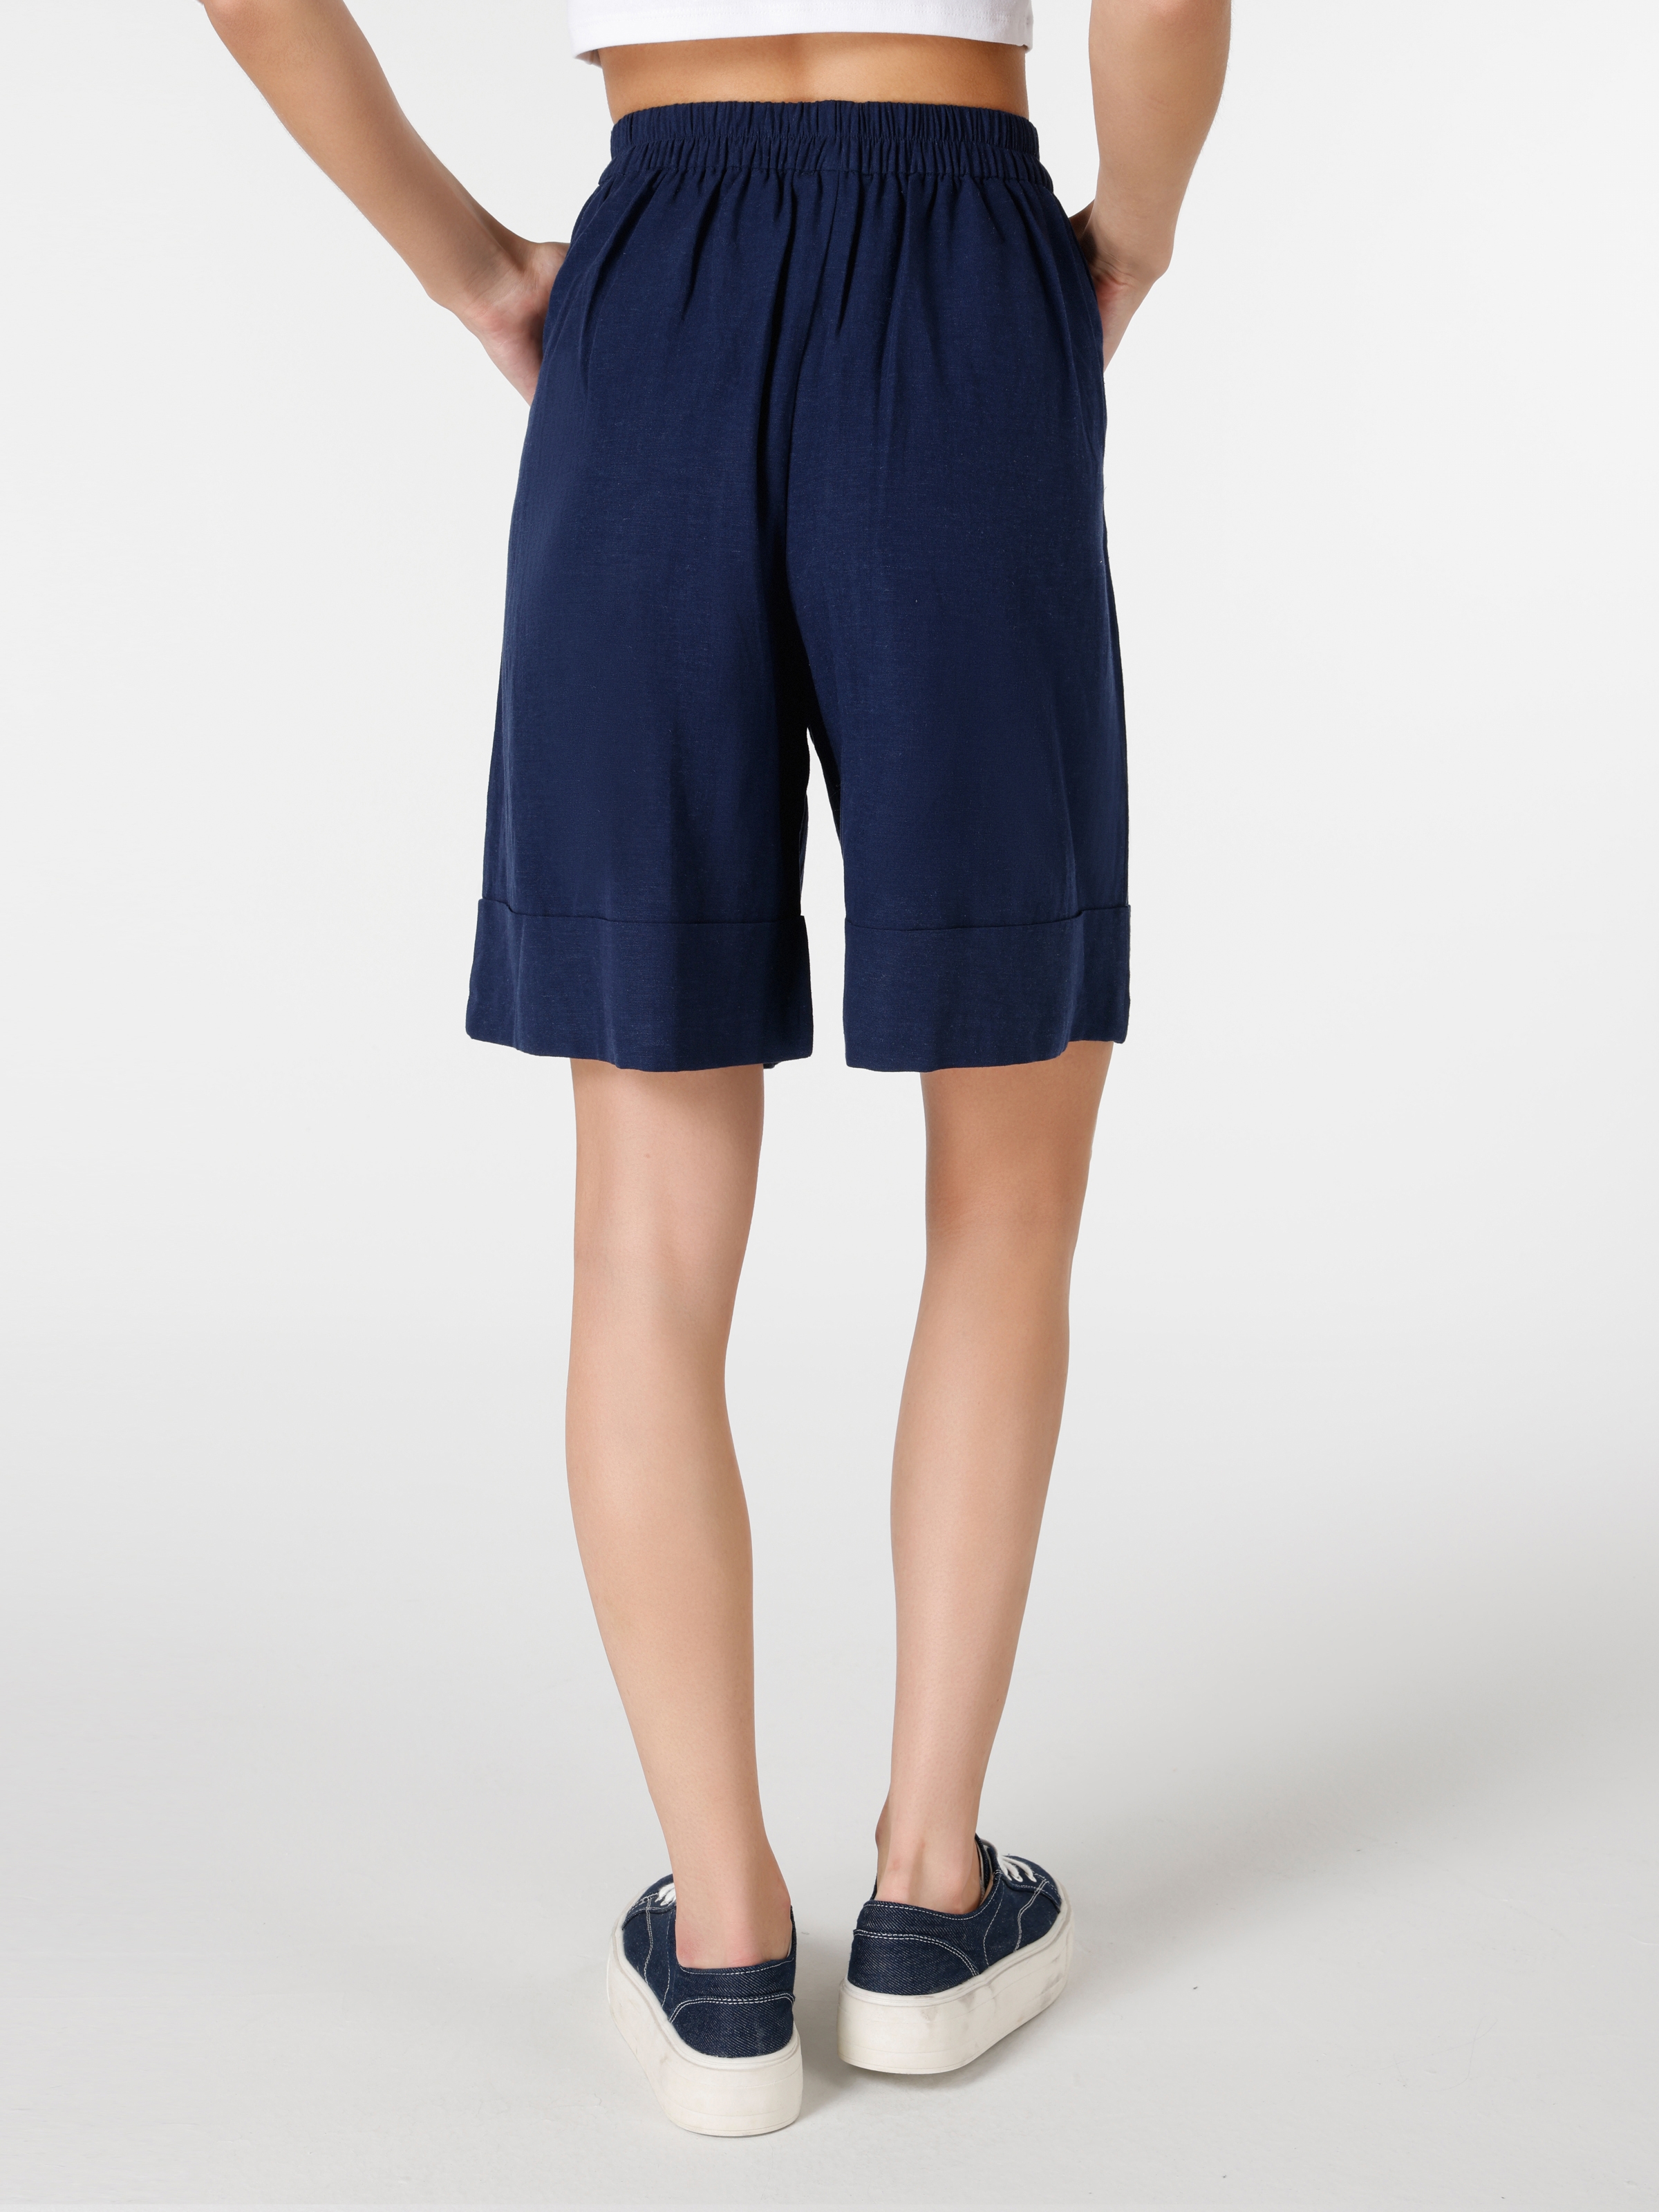 Afișați detalii pentru Short / Pantaloni Scurti De Dama Albastru Marin Regular Fit  CL1063903